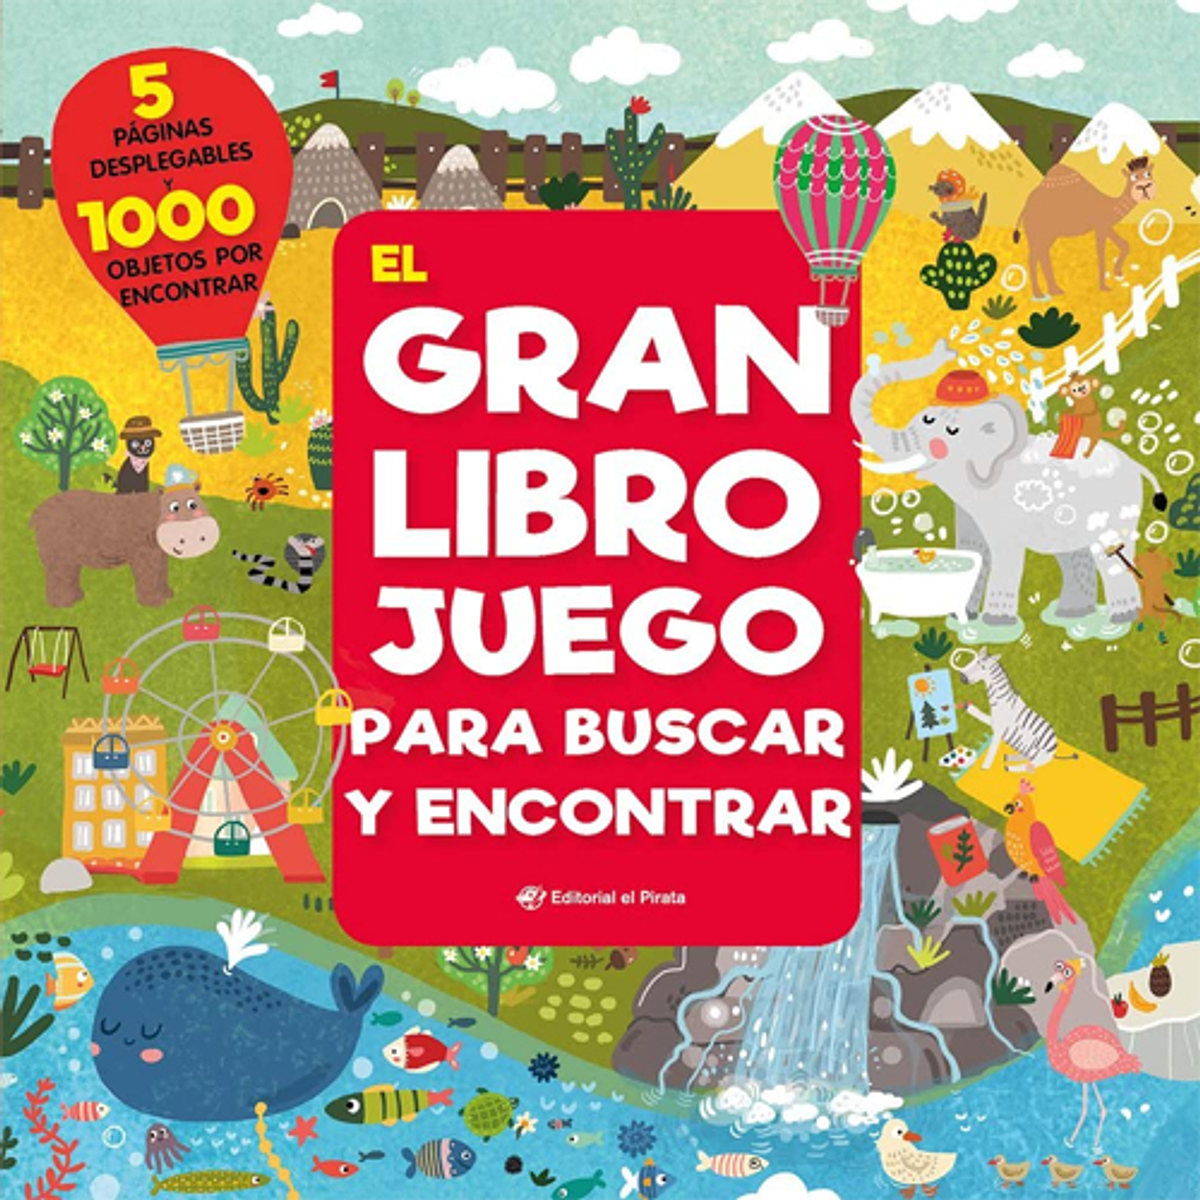 GRAN LIBRO JUEGO PARA BUSCAR Y ENCONTRAR, EL (DESPLEGABLE)